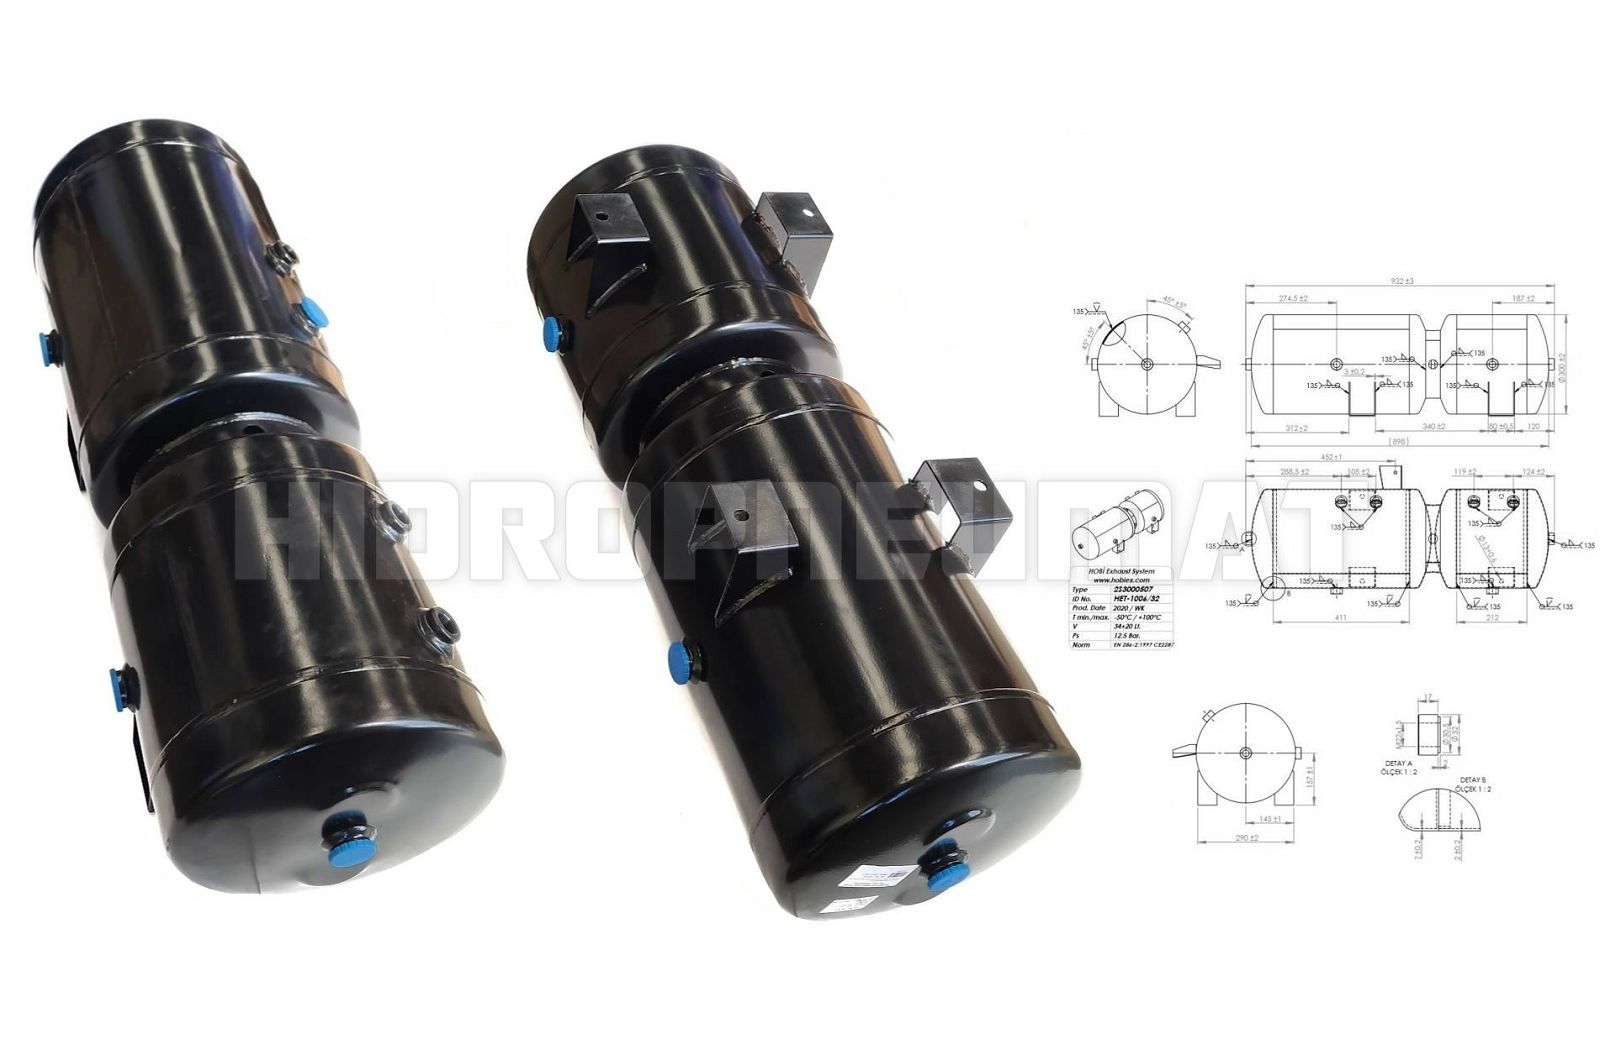 rezervoar-zraka-daf-xf105-34l20l-300x932mm-121353_1.jpg